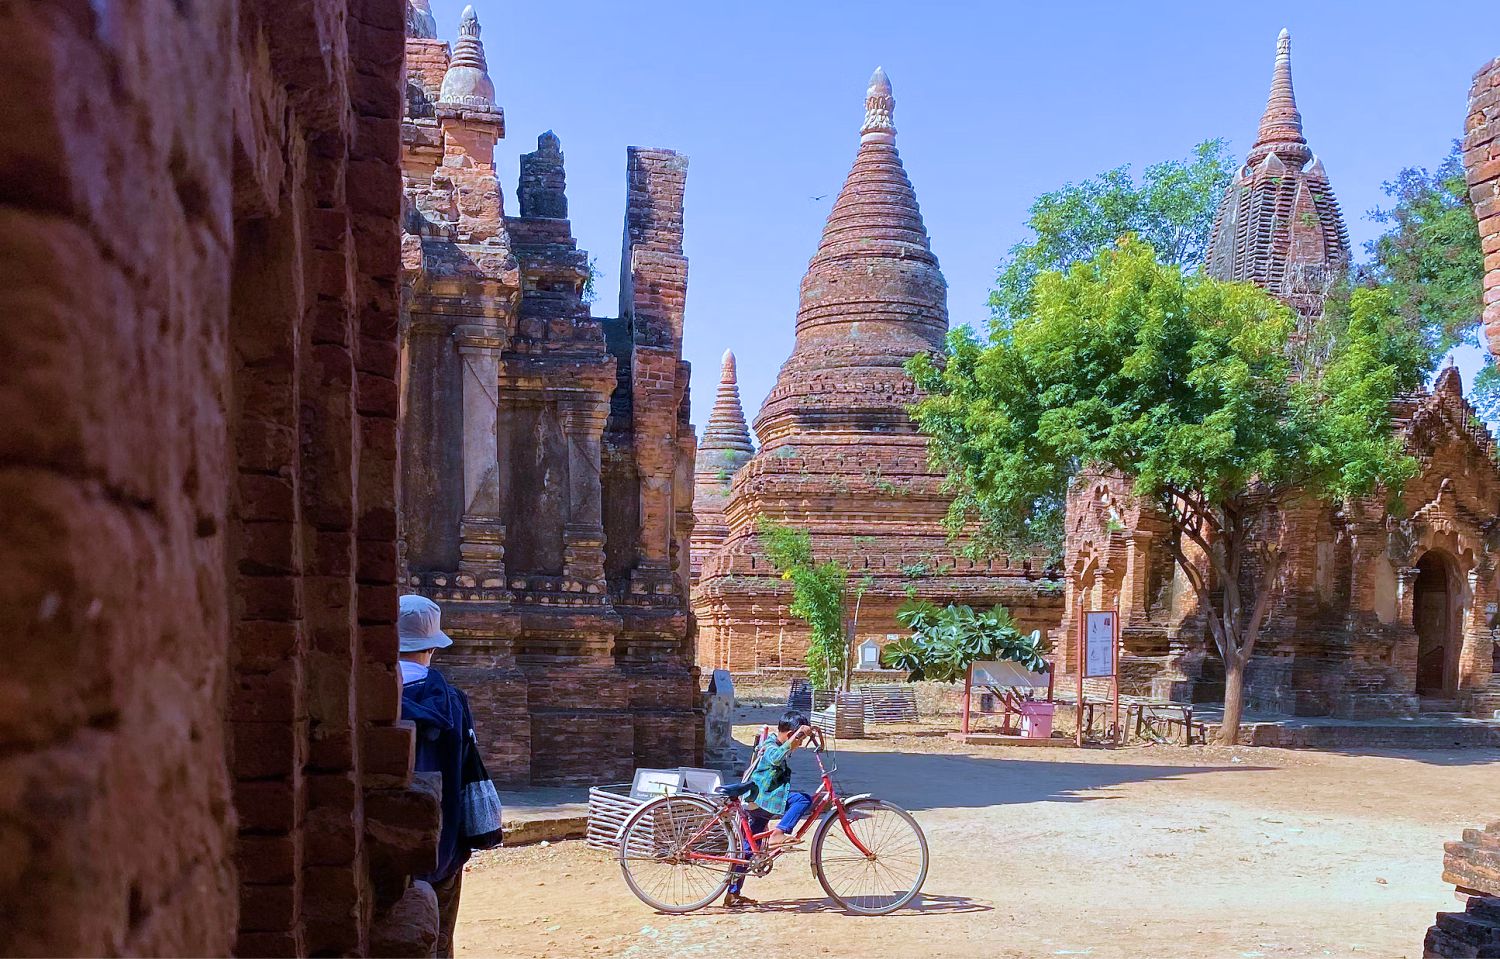 Du lịch Bagan - ngắm mặt trời lặn kì ảo sau hàng nghìn tòa tháp cổ - Ảnh 6.